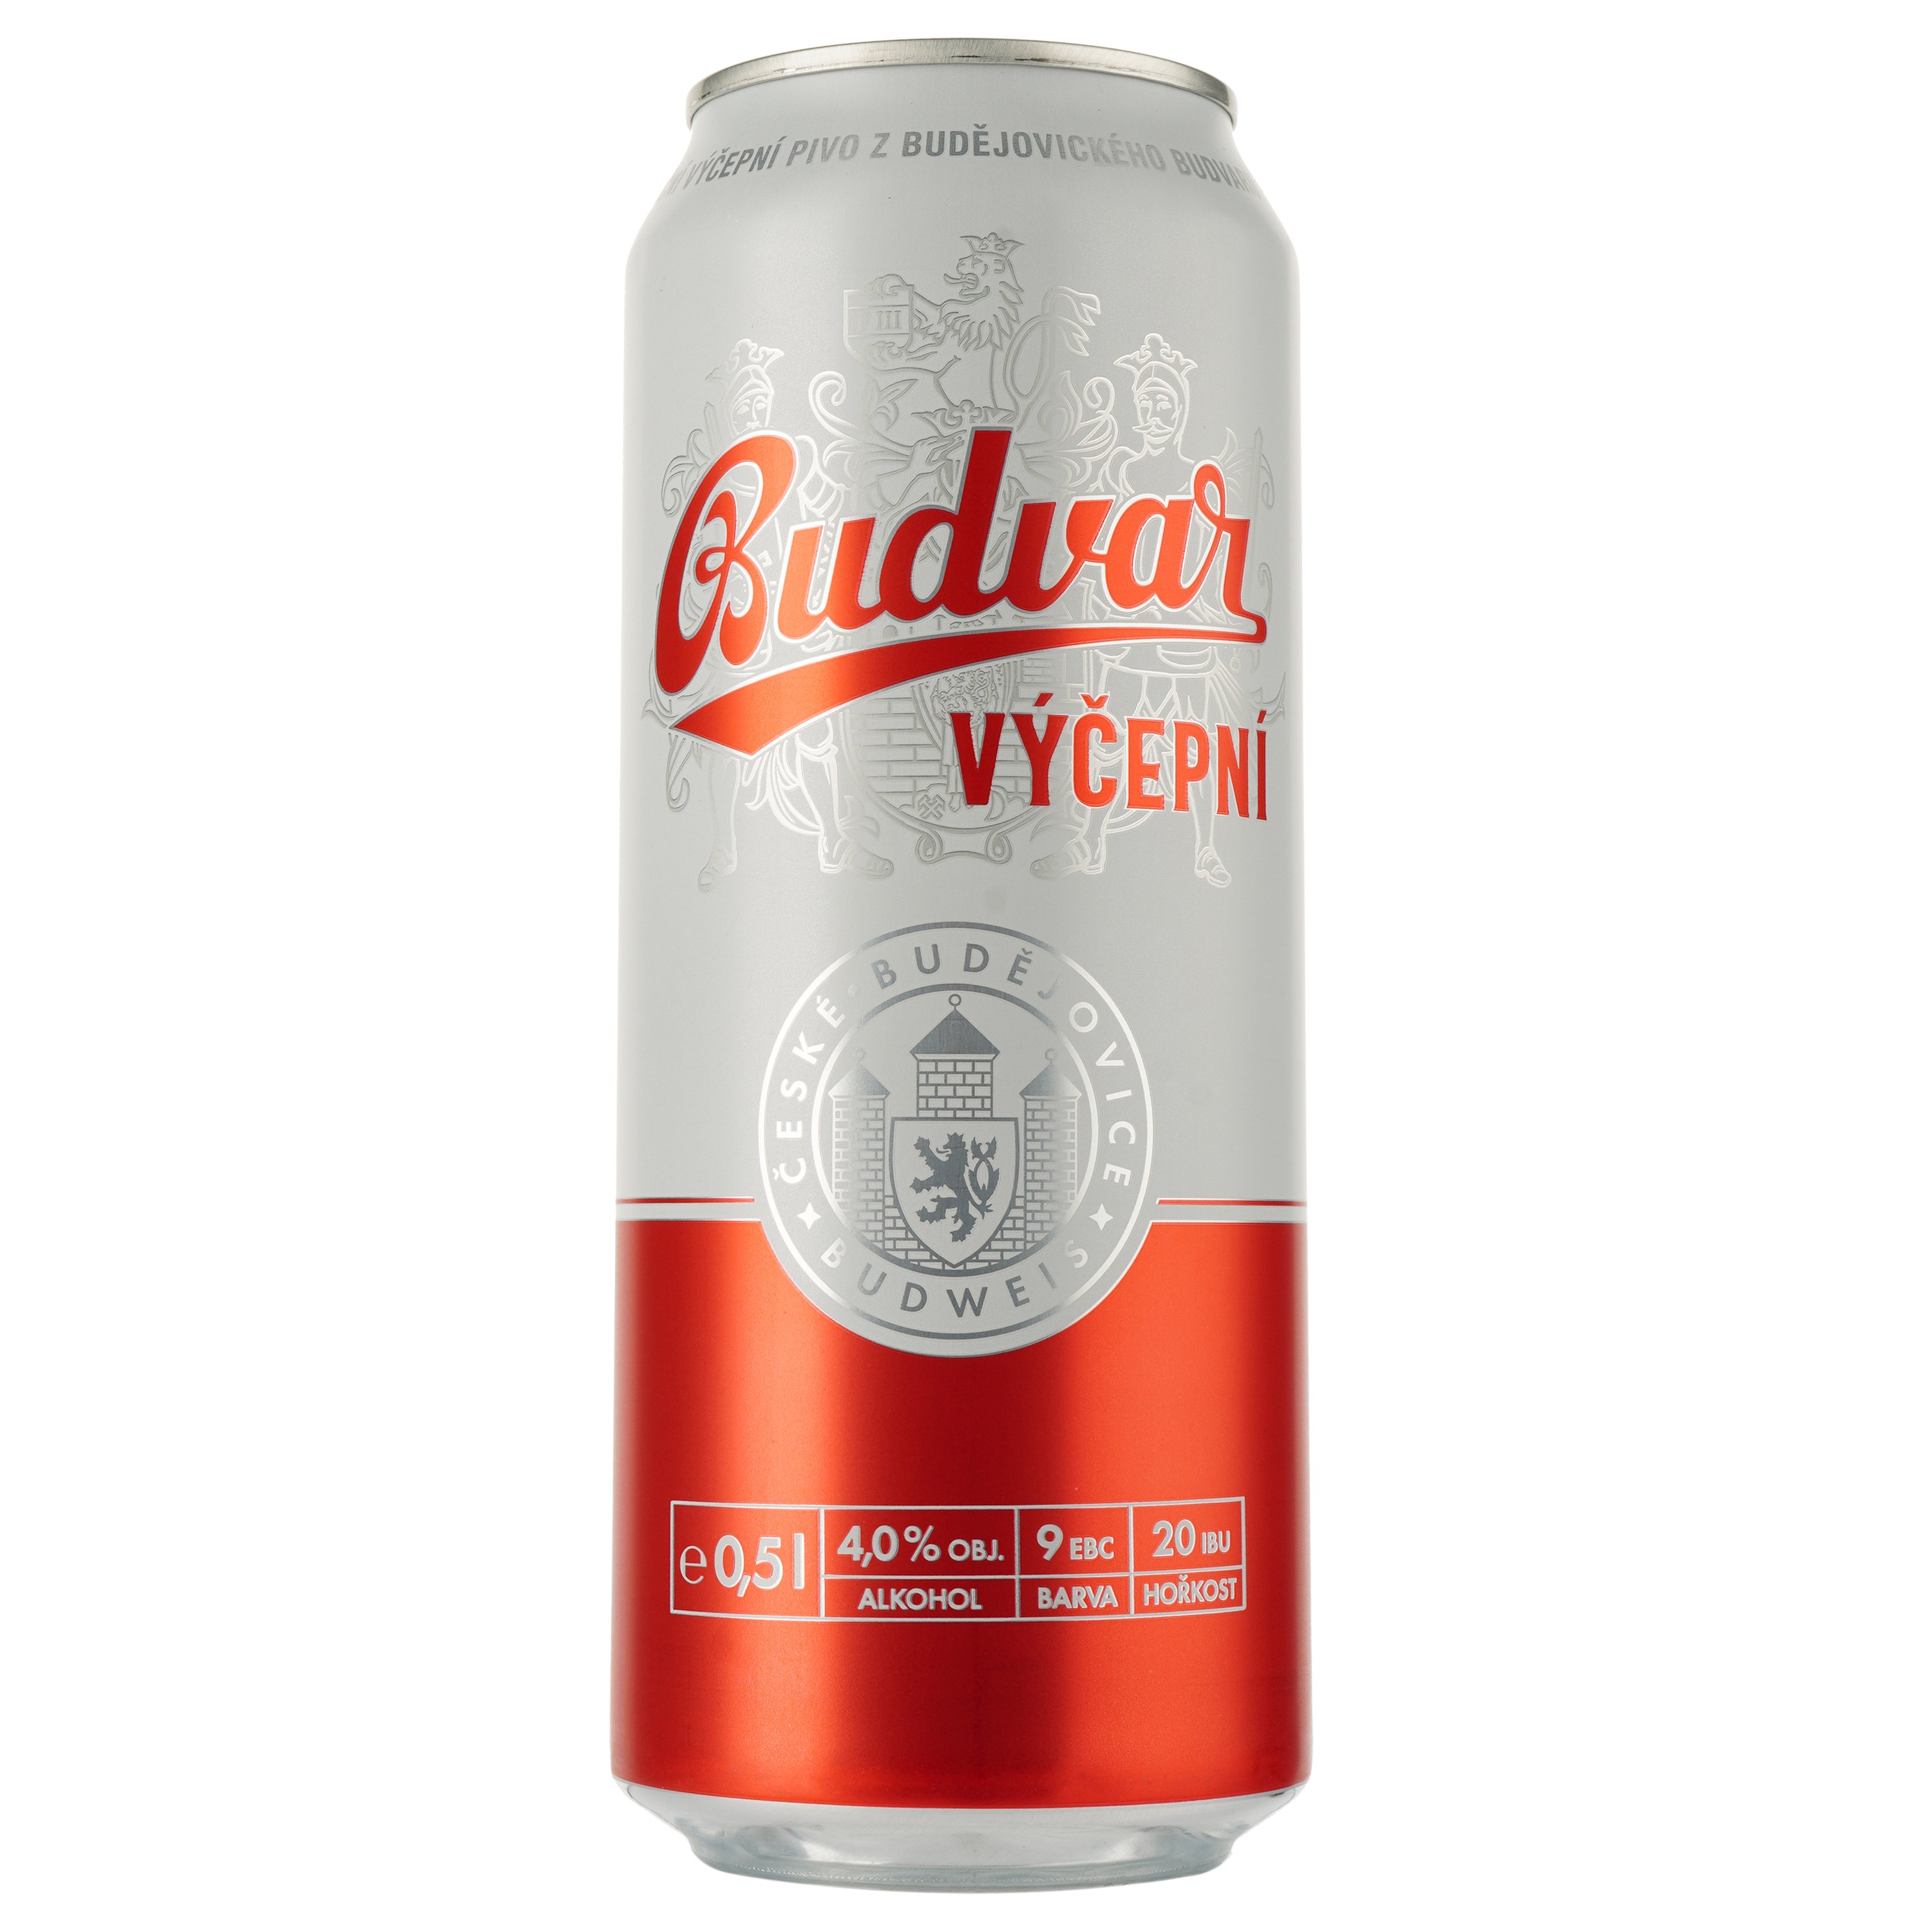 Пиво Budweiser Budvar Бочковое, светлое, ж/б, 4%, 0,5 л - фото 1